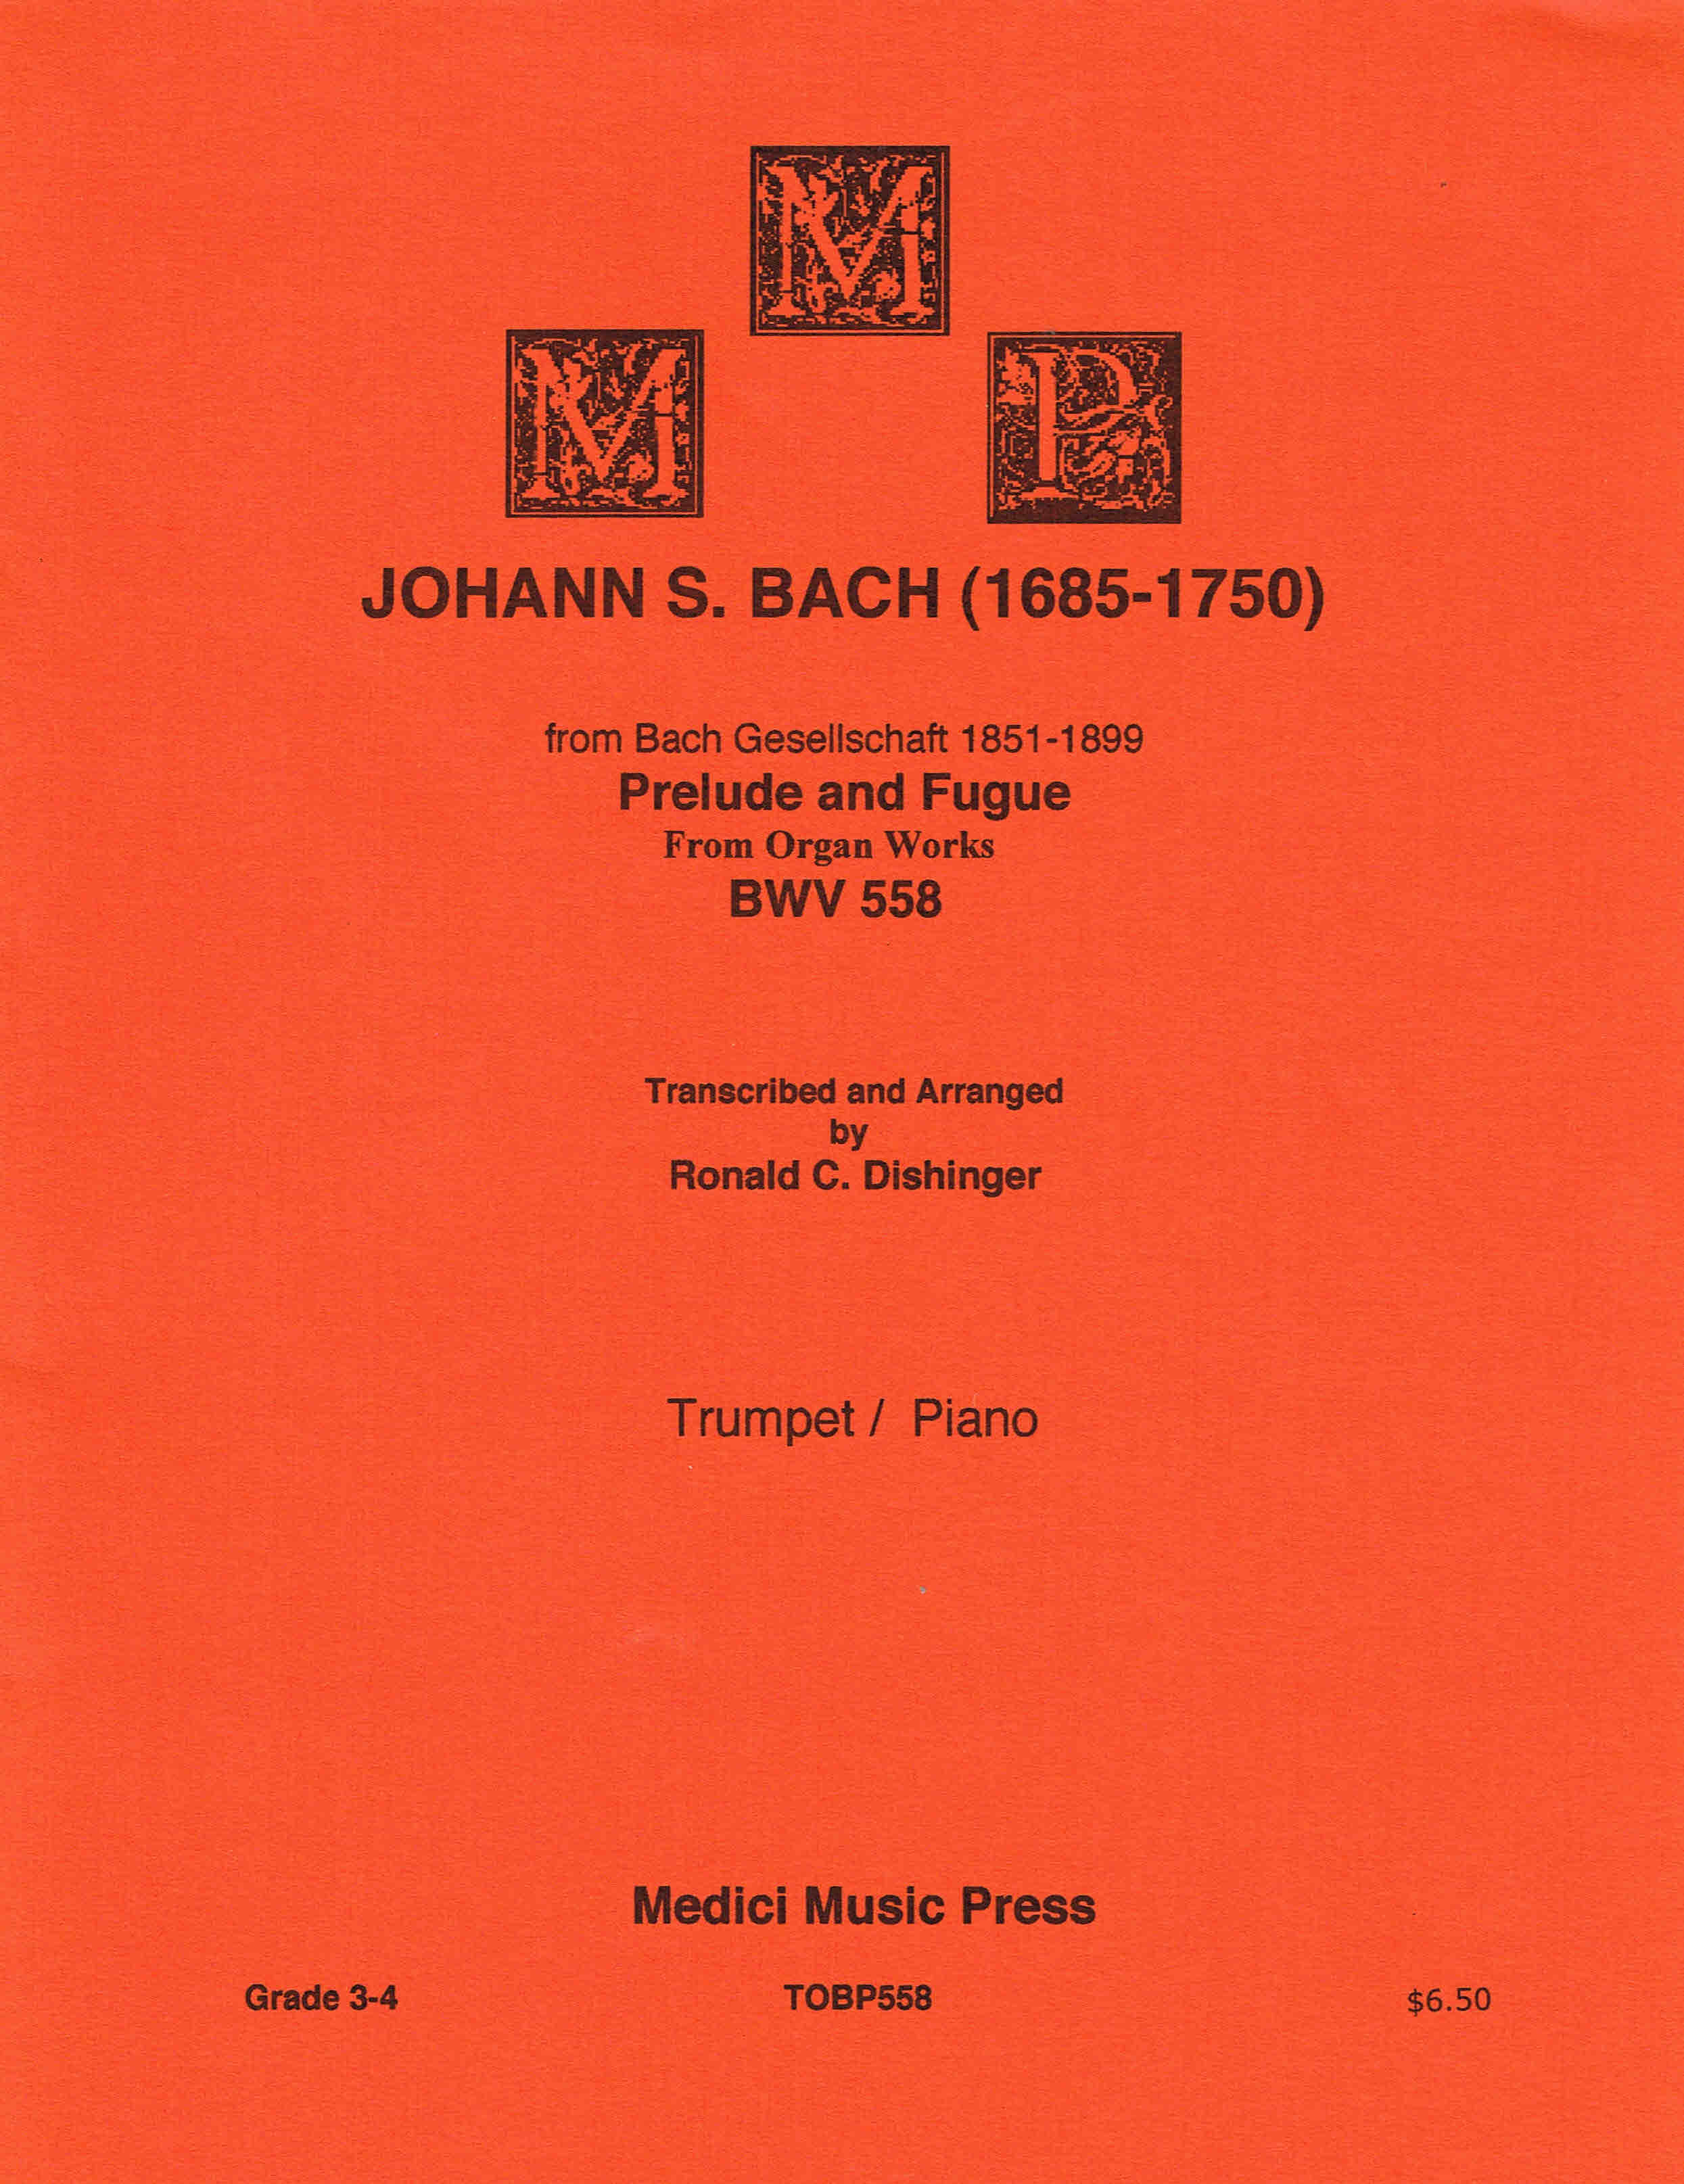 Johann S. Bach - Preludio e fuga da opere d'organo BWV 558 per tromba/pianoforte... - Foto 1 di 1